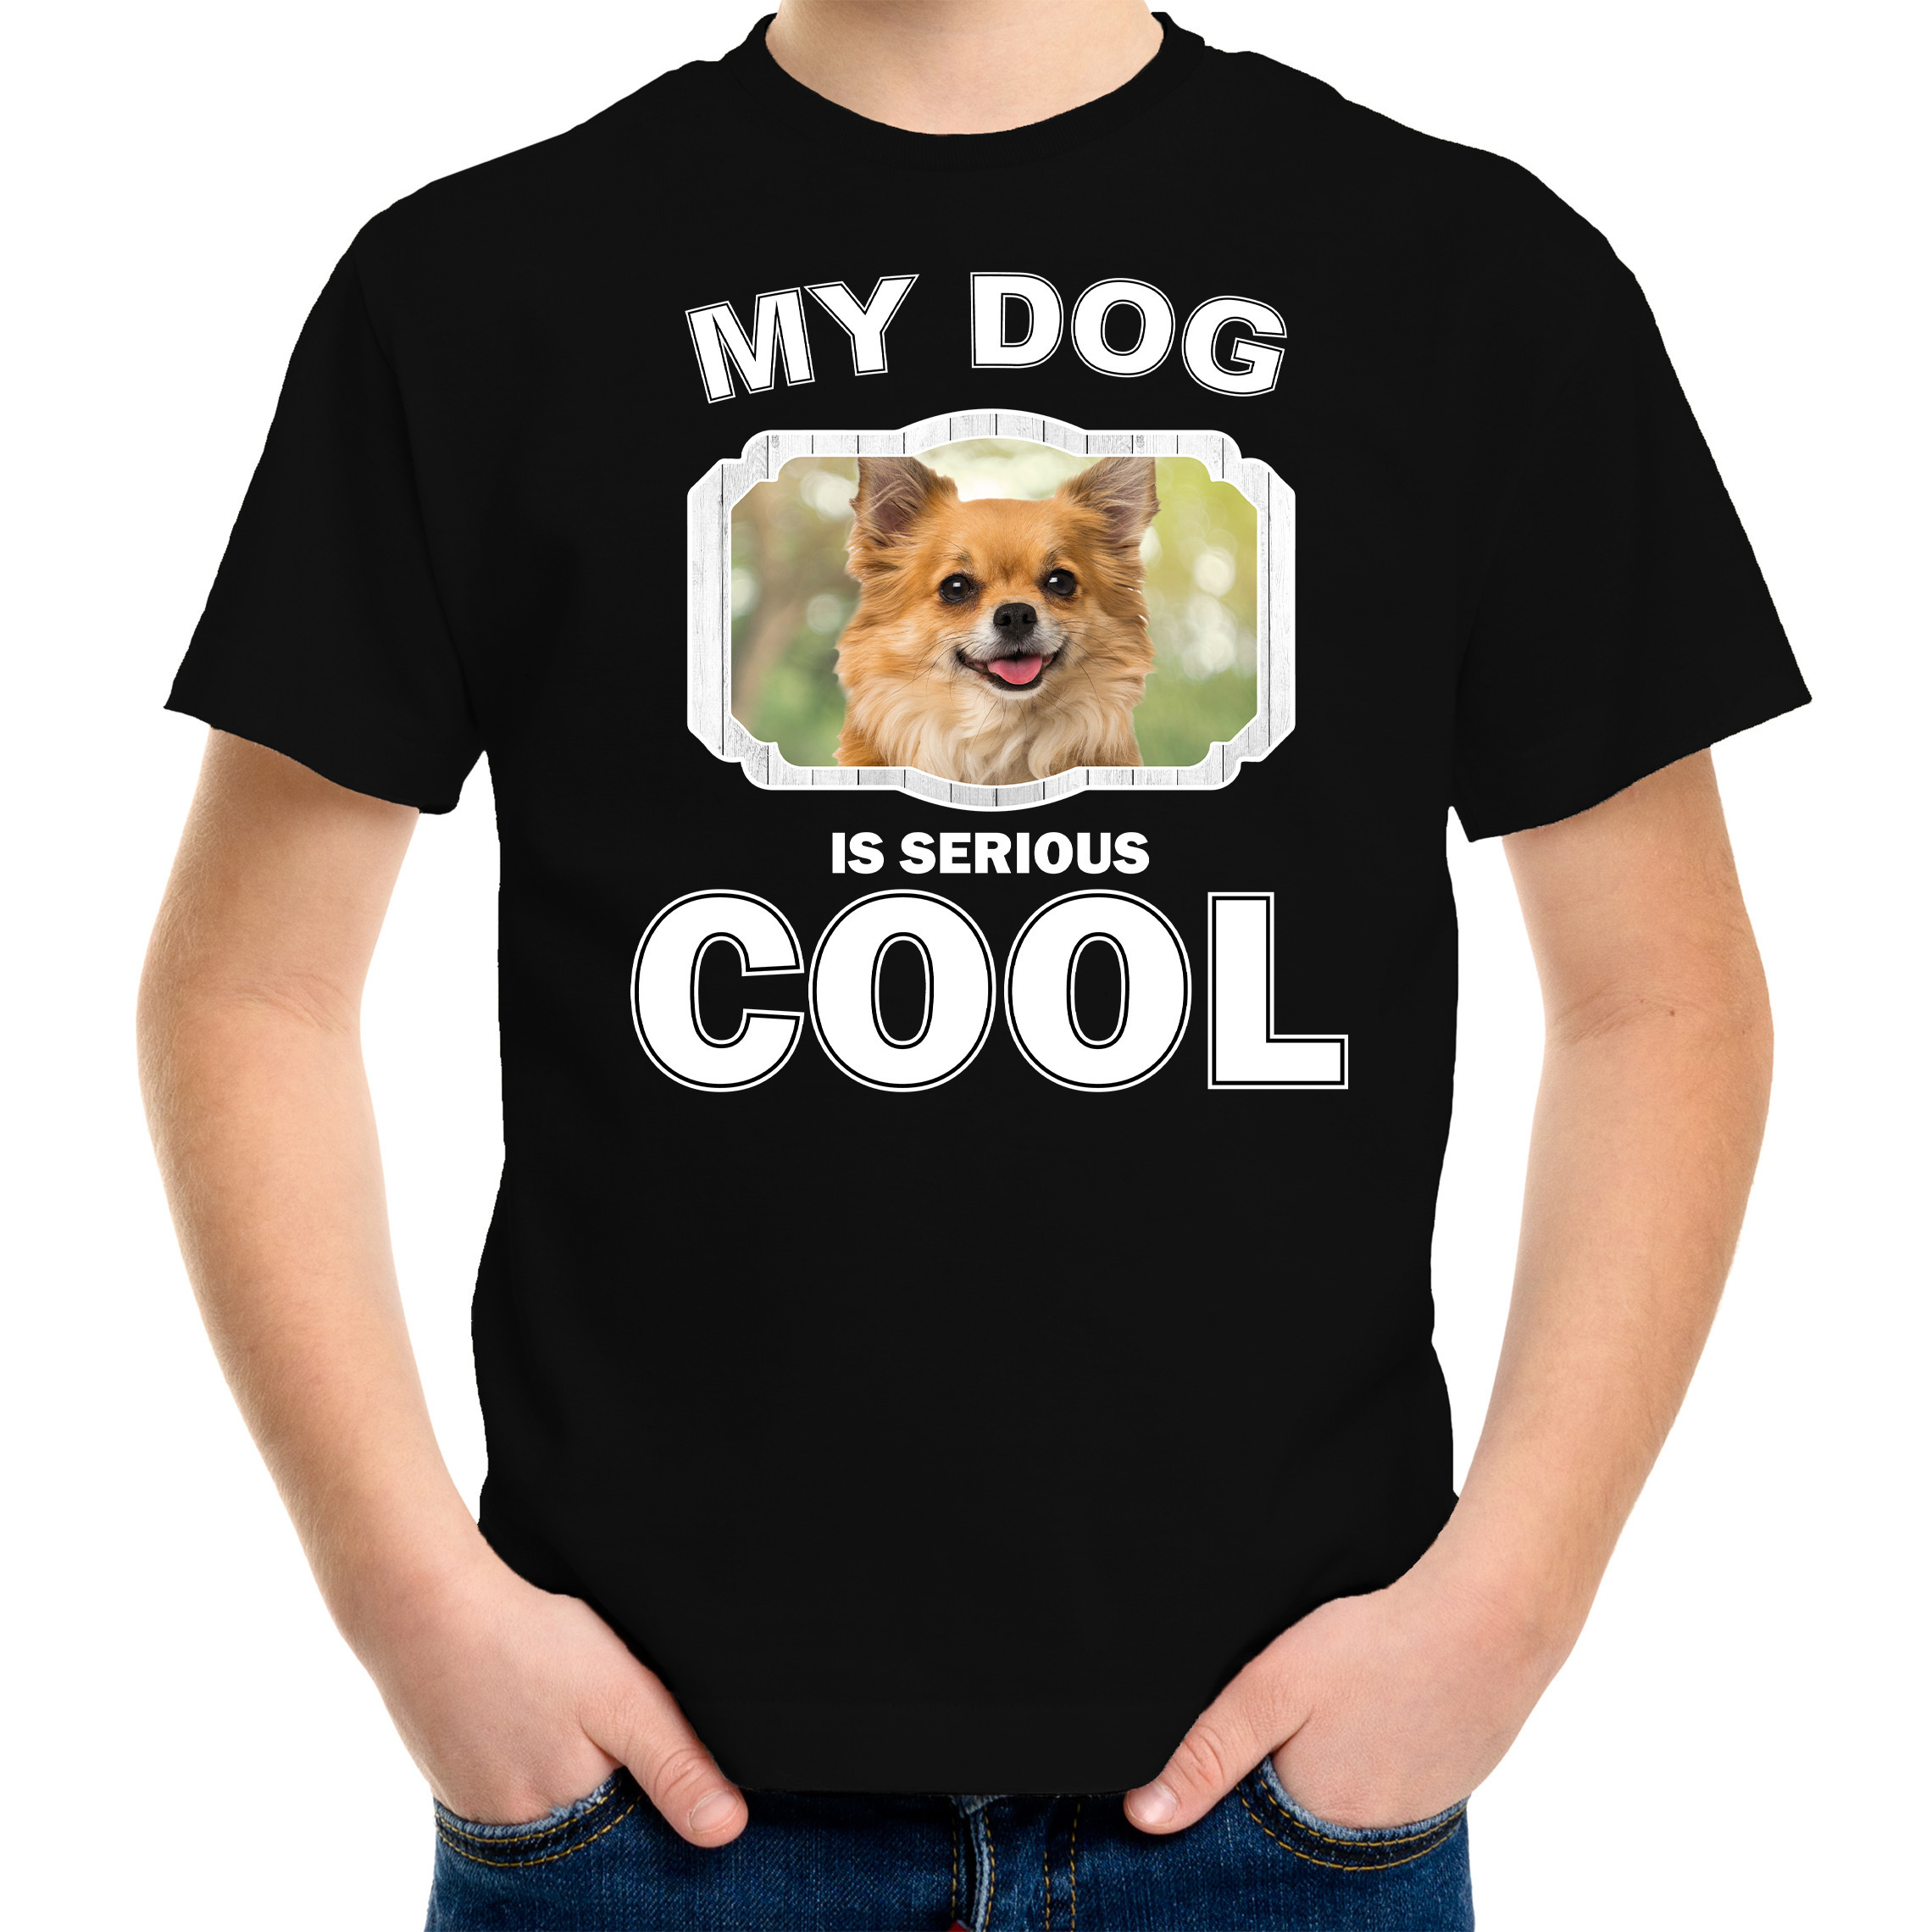 Honden liefhebber shirt Chihuahua my dog is serious cool zwart voor kinderen